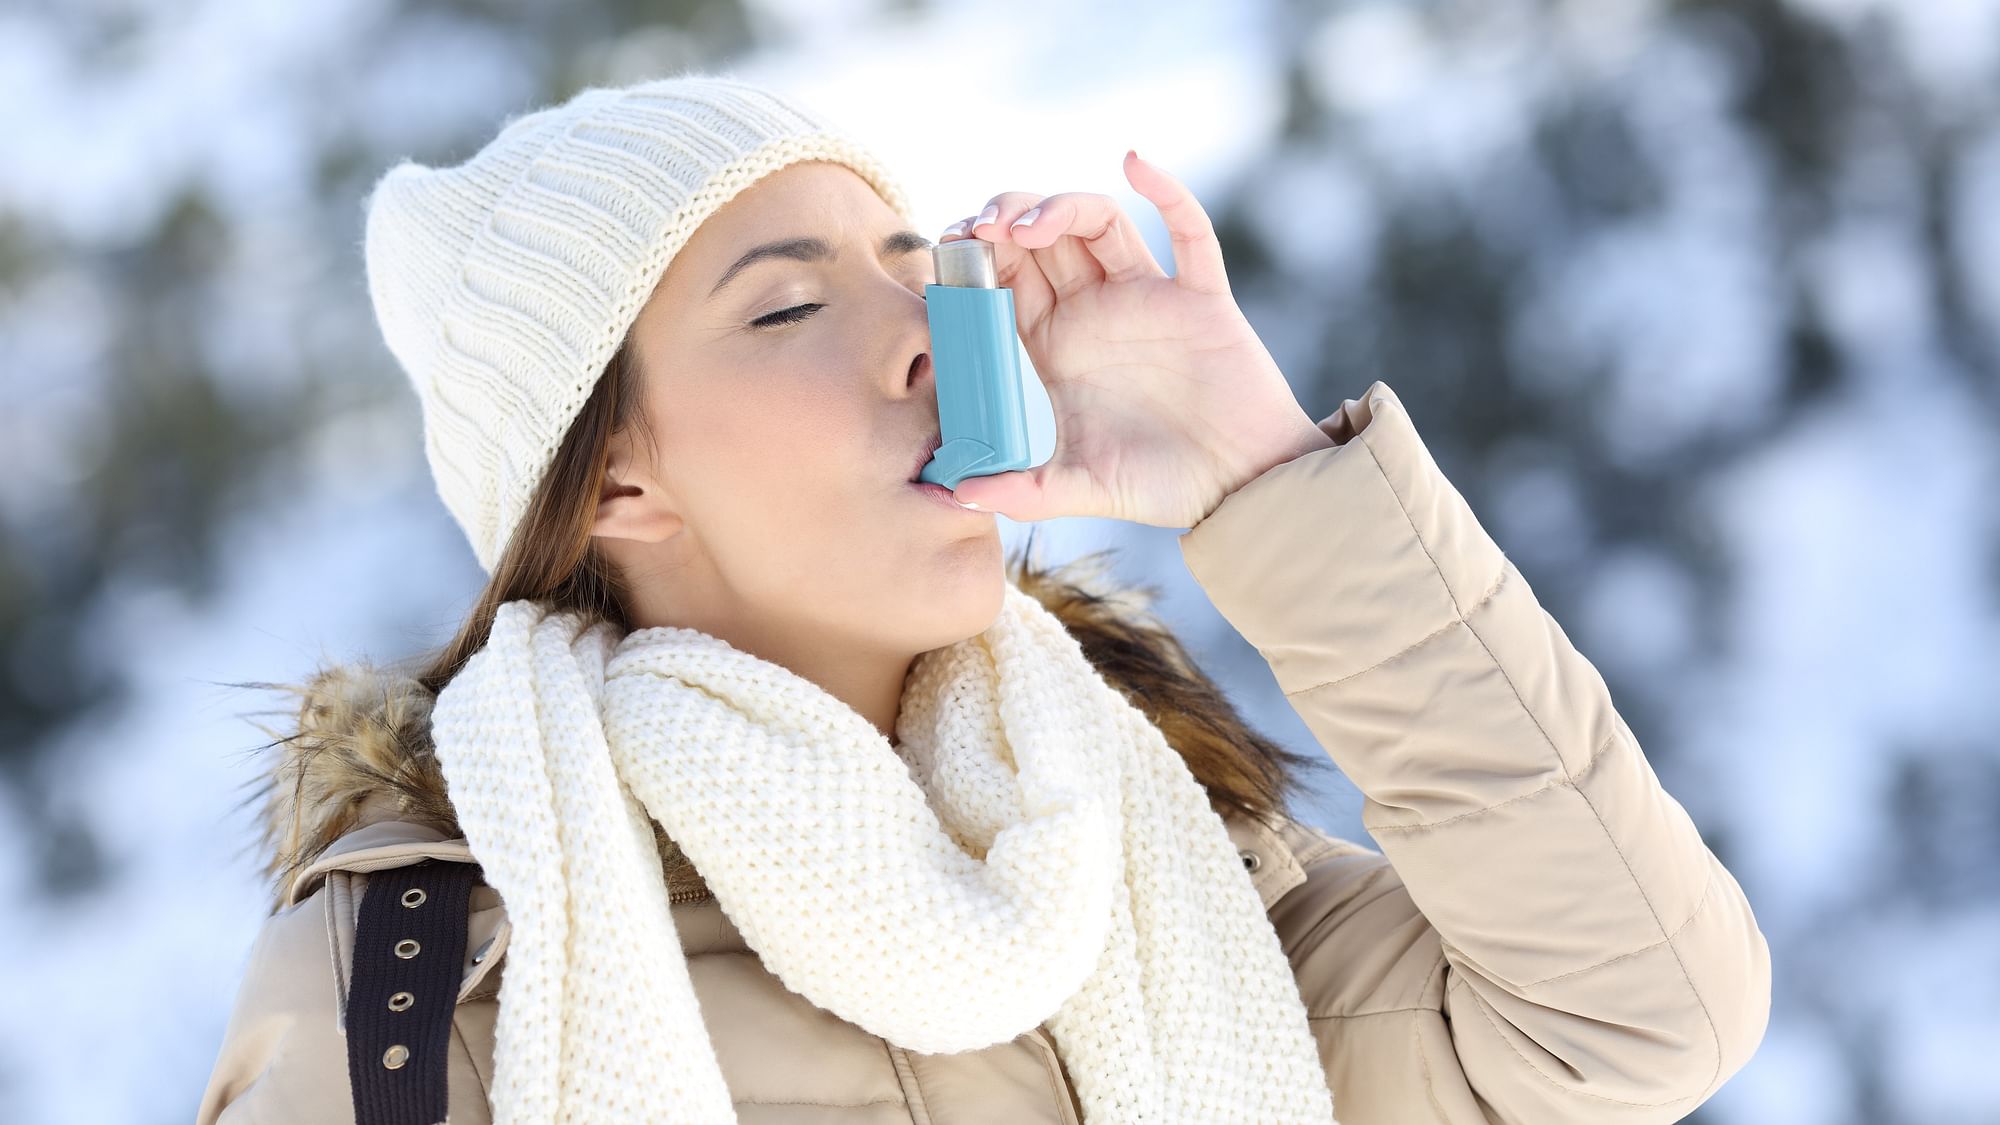 <div class="paragraphs"><p>Asthma Prevention Tips:&nbsp;<strong>सर्दियों में अस्थमा के ट्रिगर्स से बचना चाहिए</strong></p></div>